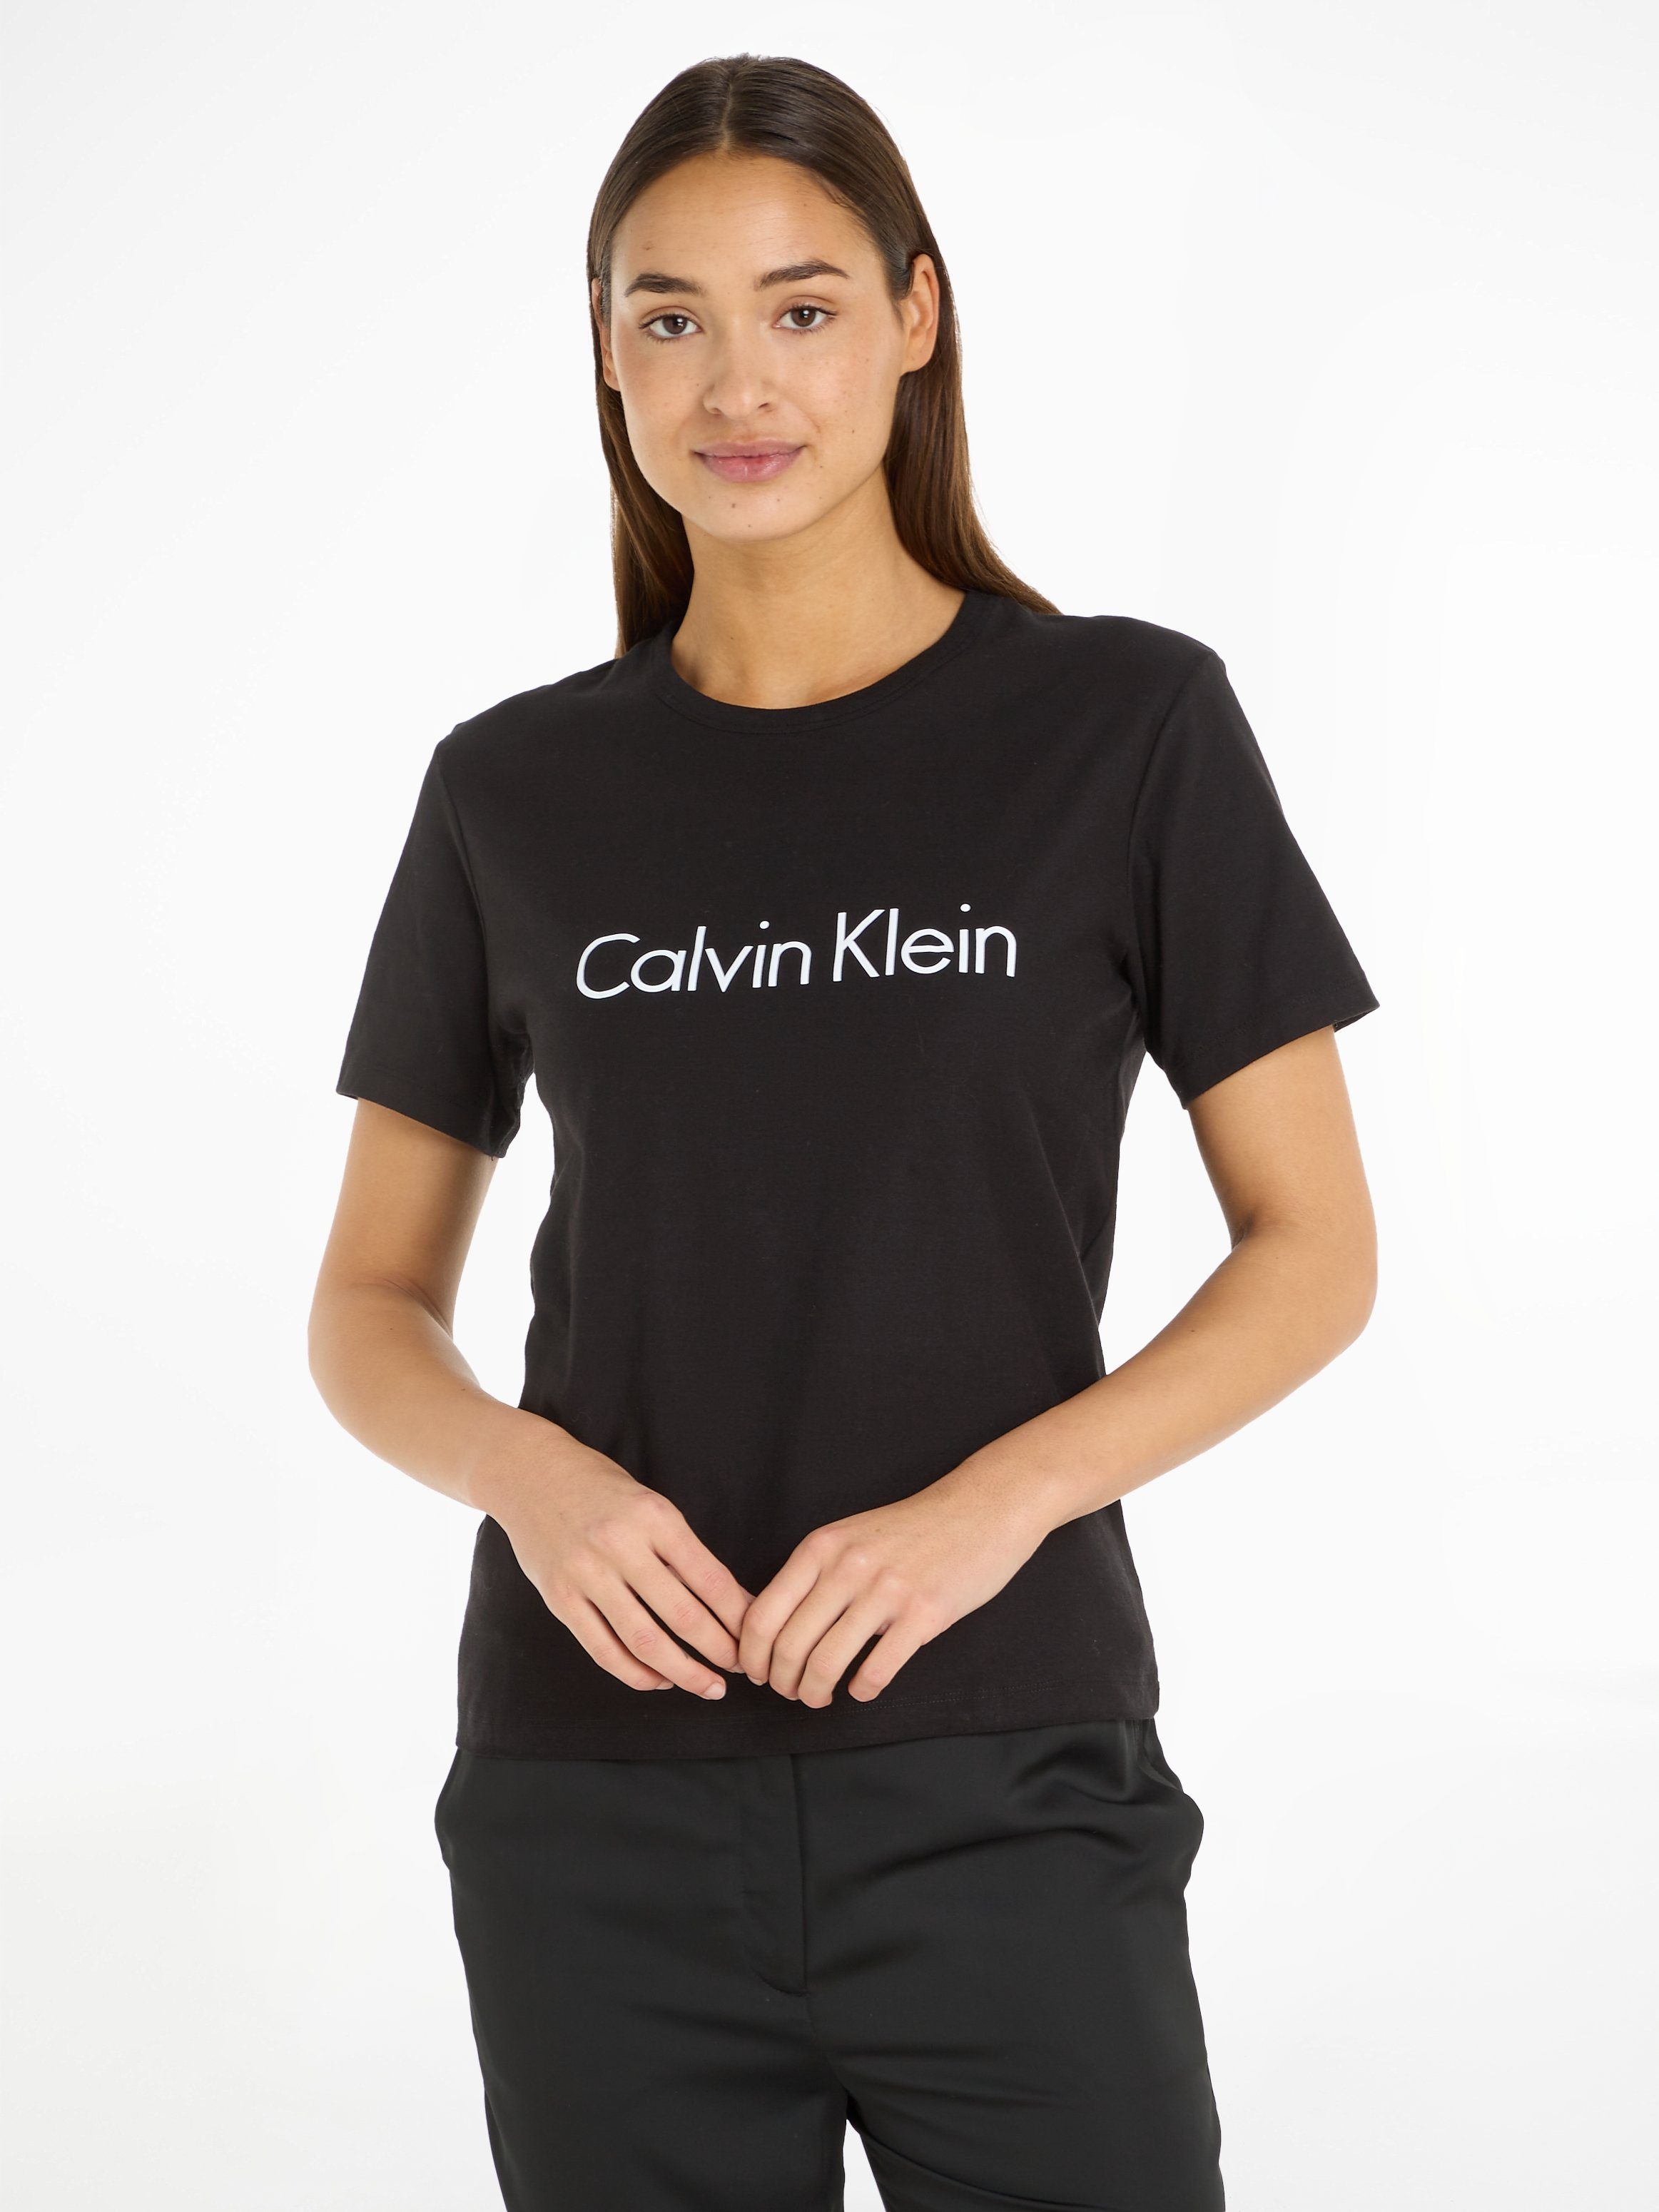 Klein mit großem T-Shirt Underwear Calvin Logodruck